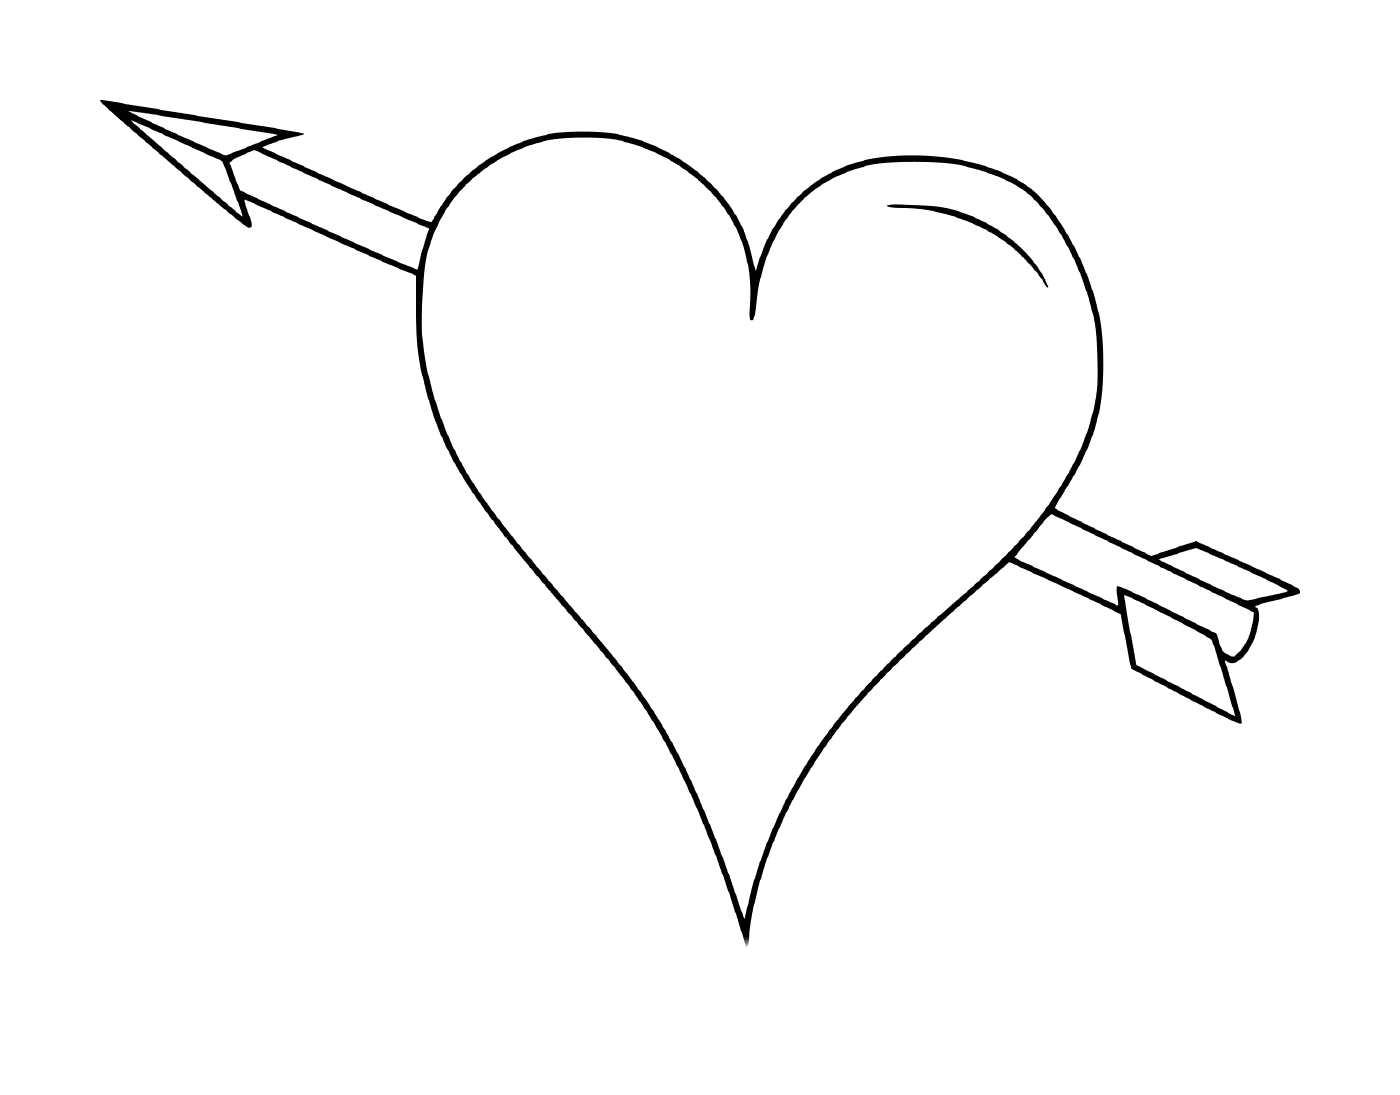  Un cuore con una freccia 